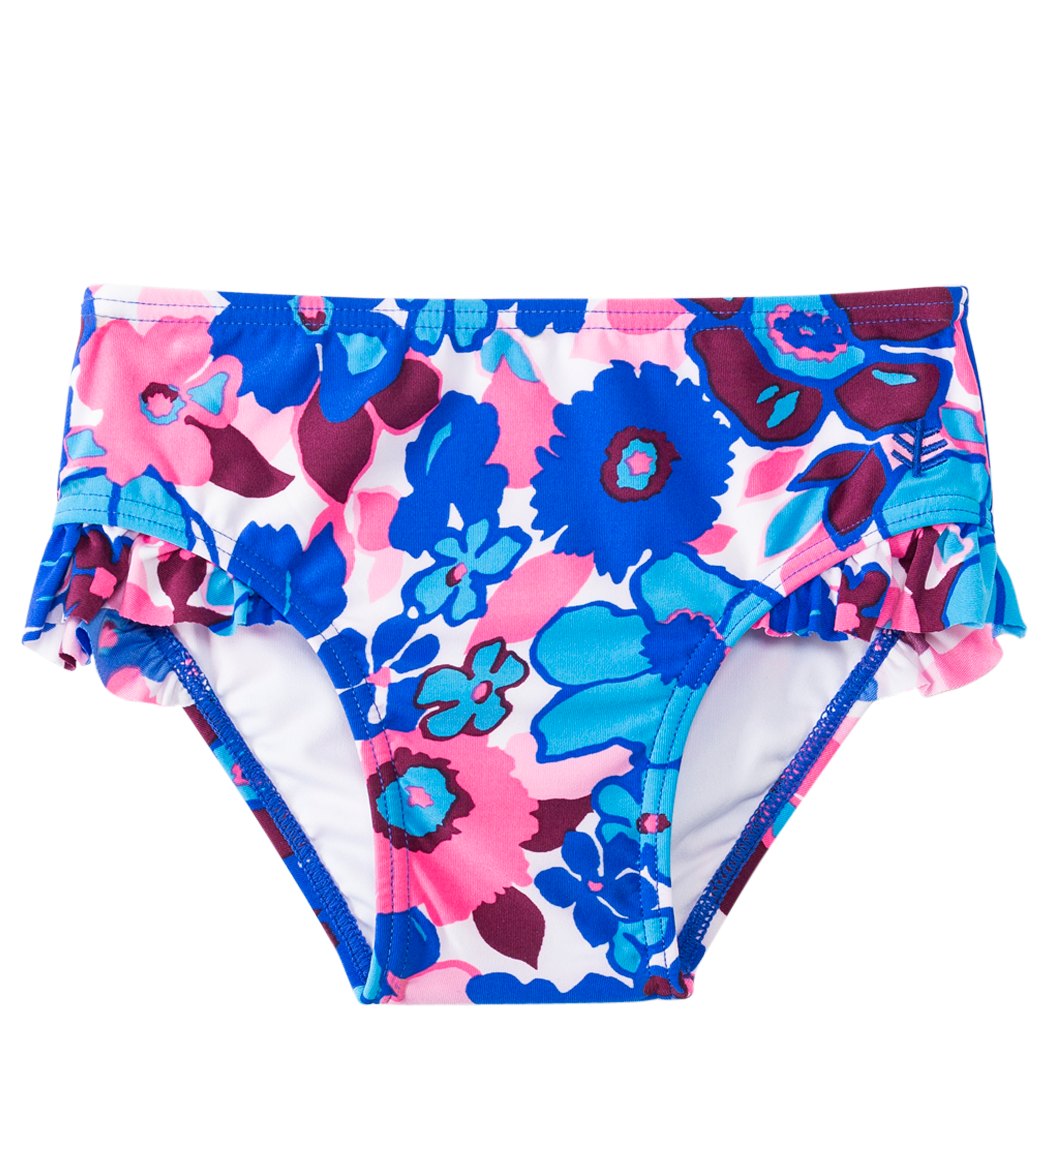 Coolibar Girls' Upf 50+ Ruffle Beach Bottom Cover 6 Months-3T - Blue Summer Bloom 6-12 Months Polyester/Spandex - Swimoutlet.com